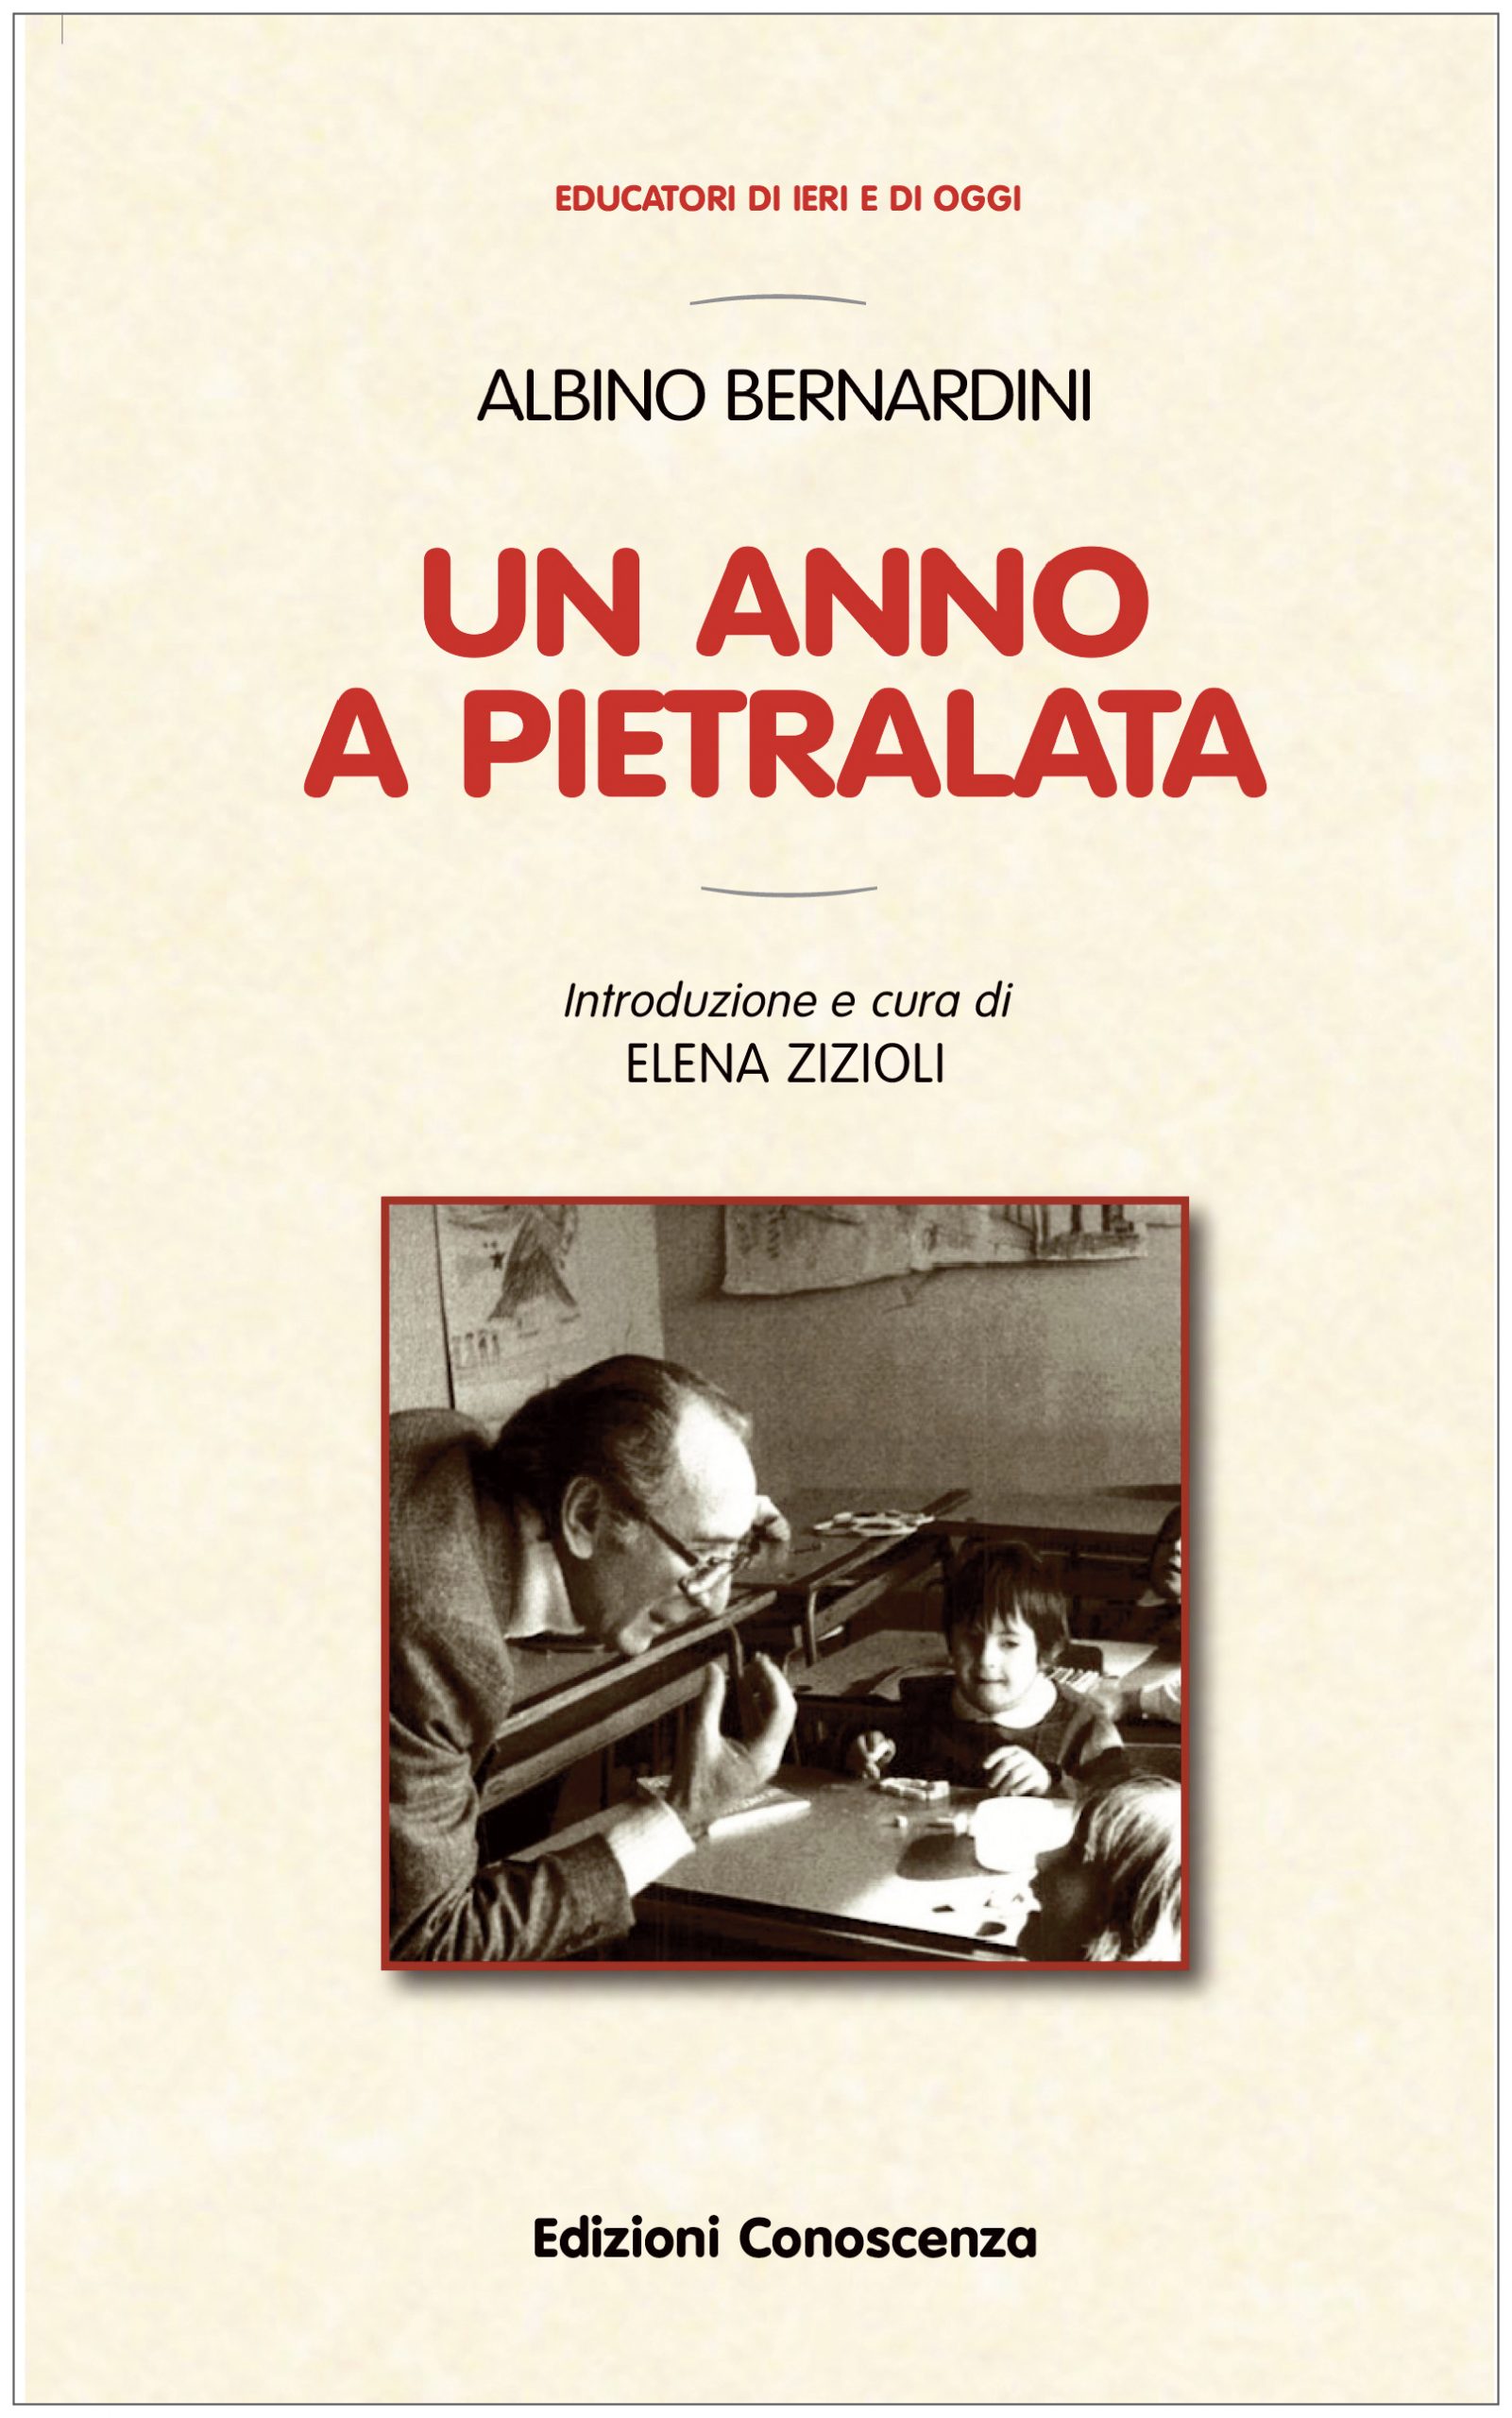 Albino Bernardini. Un anno a Pietralata - Edizioni Conoscenza